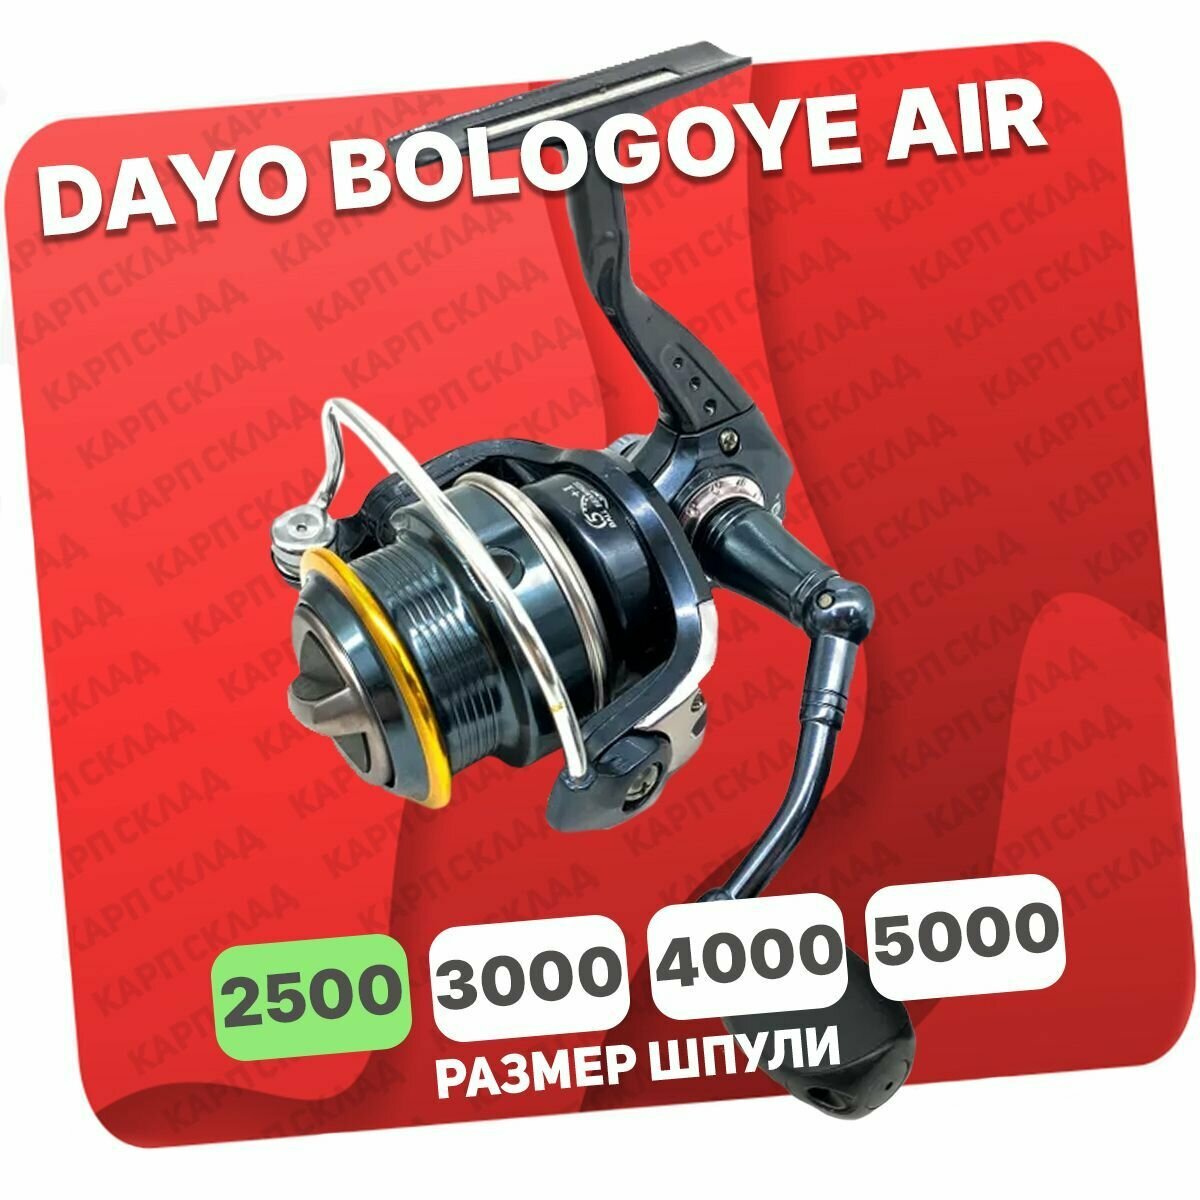 Катушка безынерционная DAYO BOLOGOYE AIR SPOOL 2500 (5+1)BB AVS